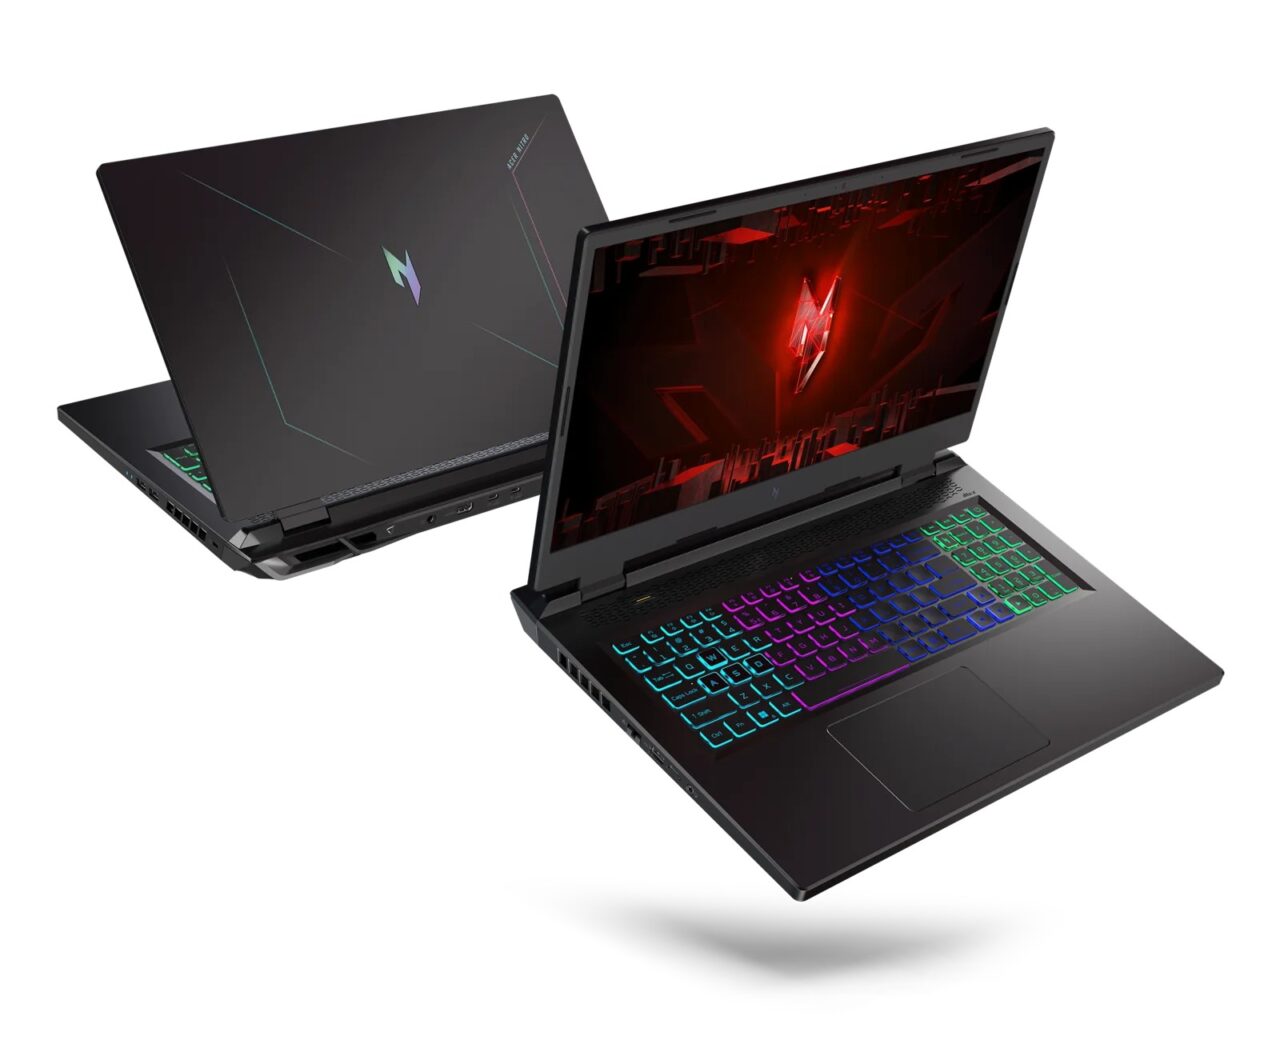 Dwa laptopy dla graczy z podświetlanymi klawiaturami, jeden widziany od tyłu, a drugi od przodu z widocznym ekranem z grafiką gamingową.